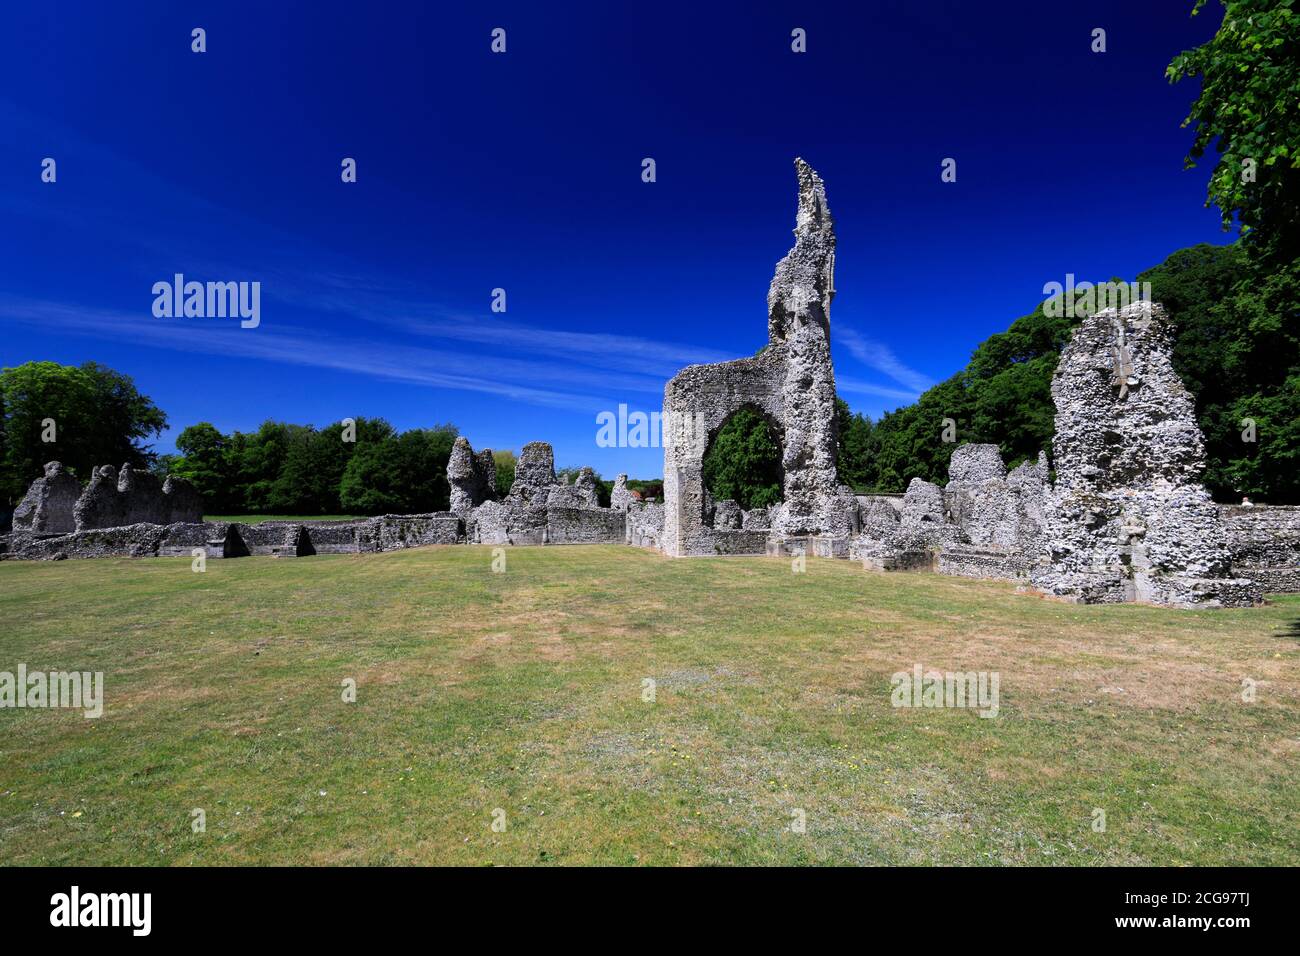 Les ruines du Prieuré de Thetford, l'un des plus importants monastères d'East Anglian, ville de Thetford, Norfolk, Angleterre, Royaume-Uni Banque D'Images